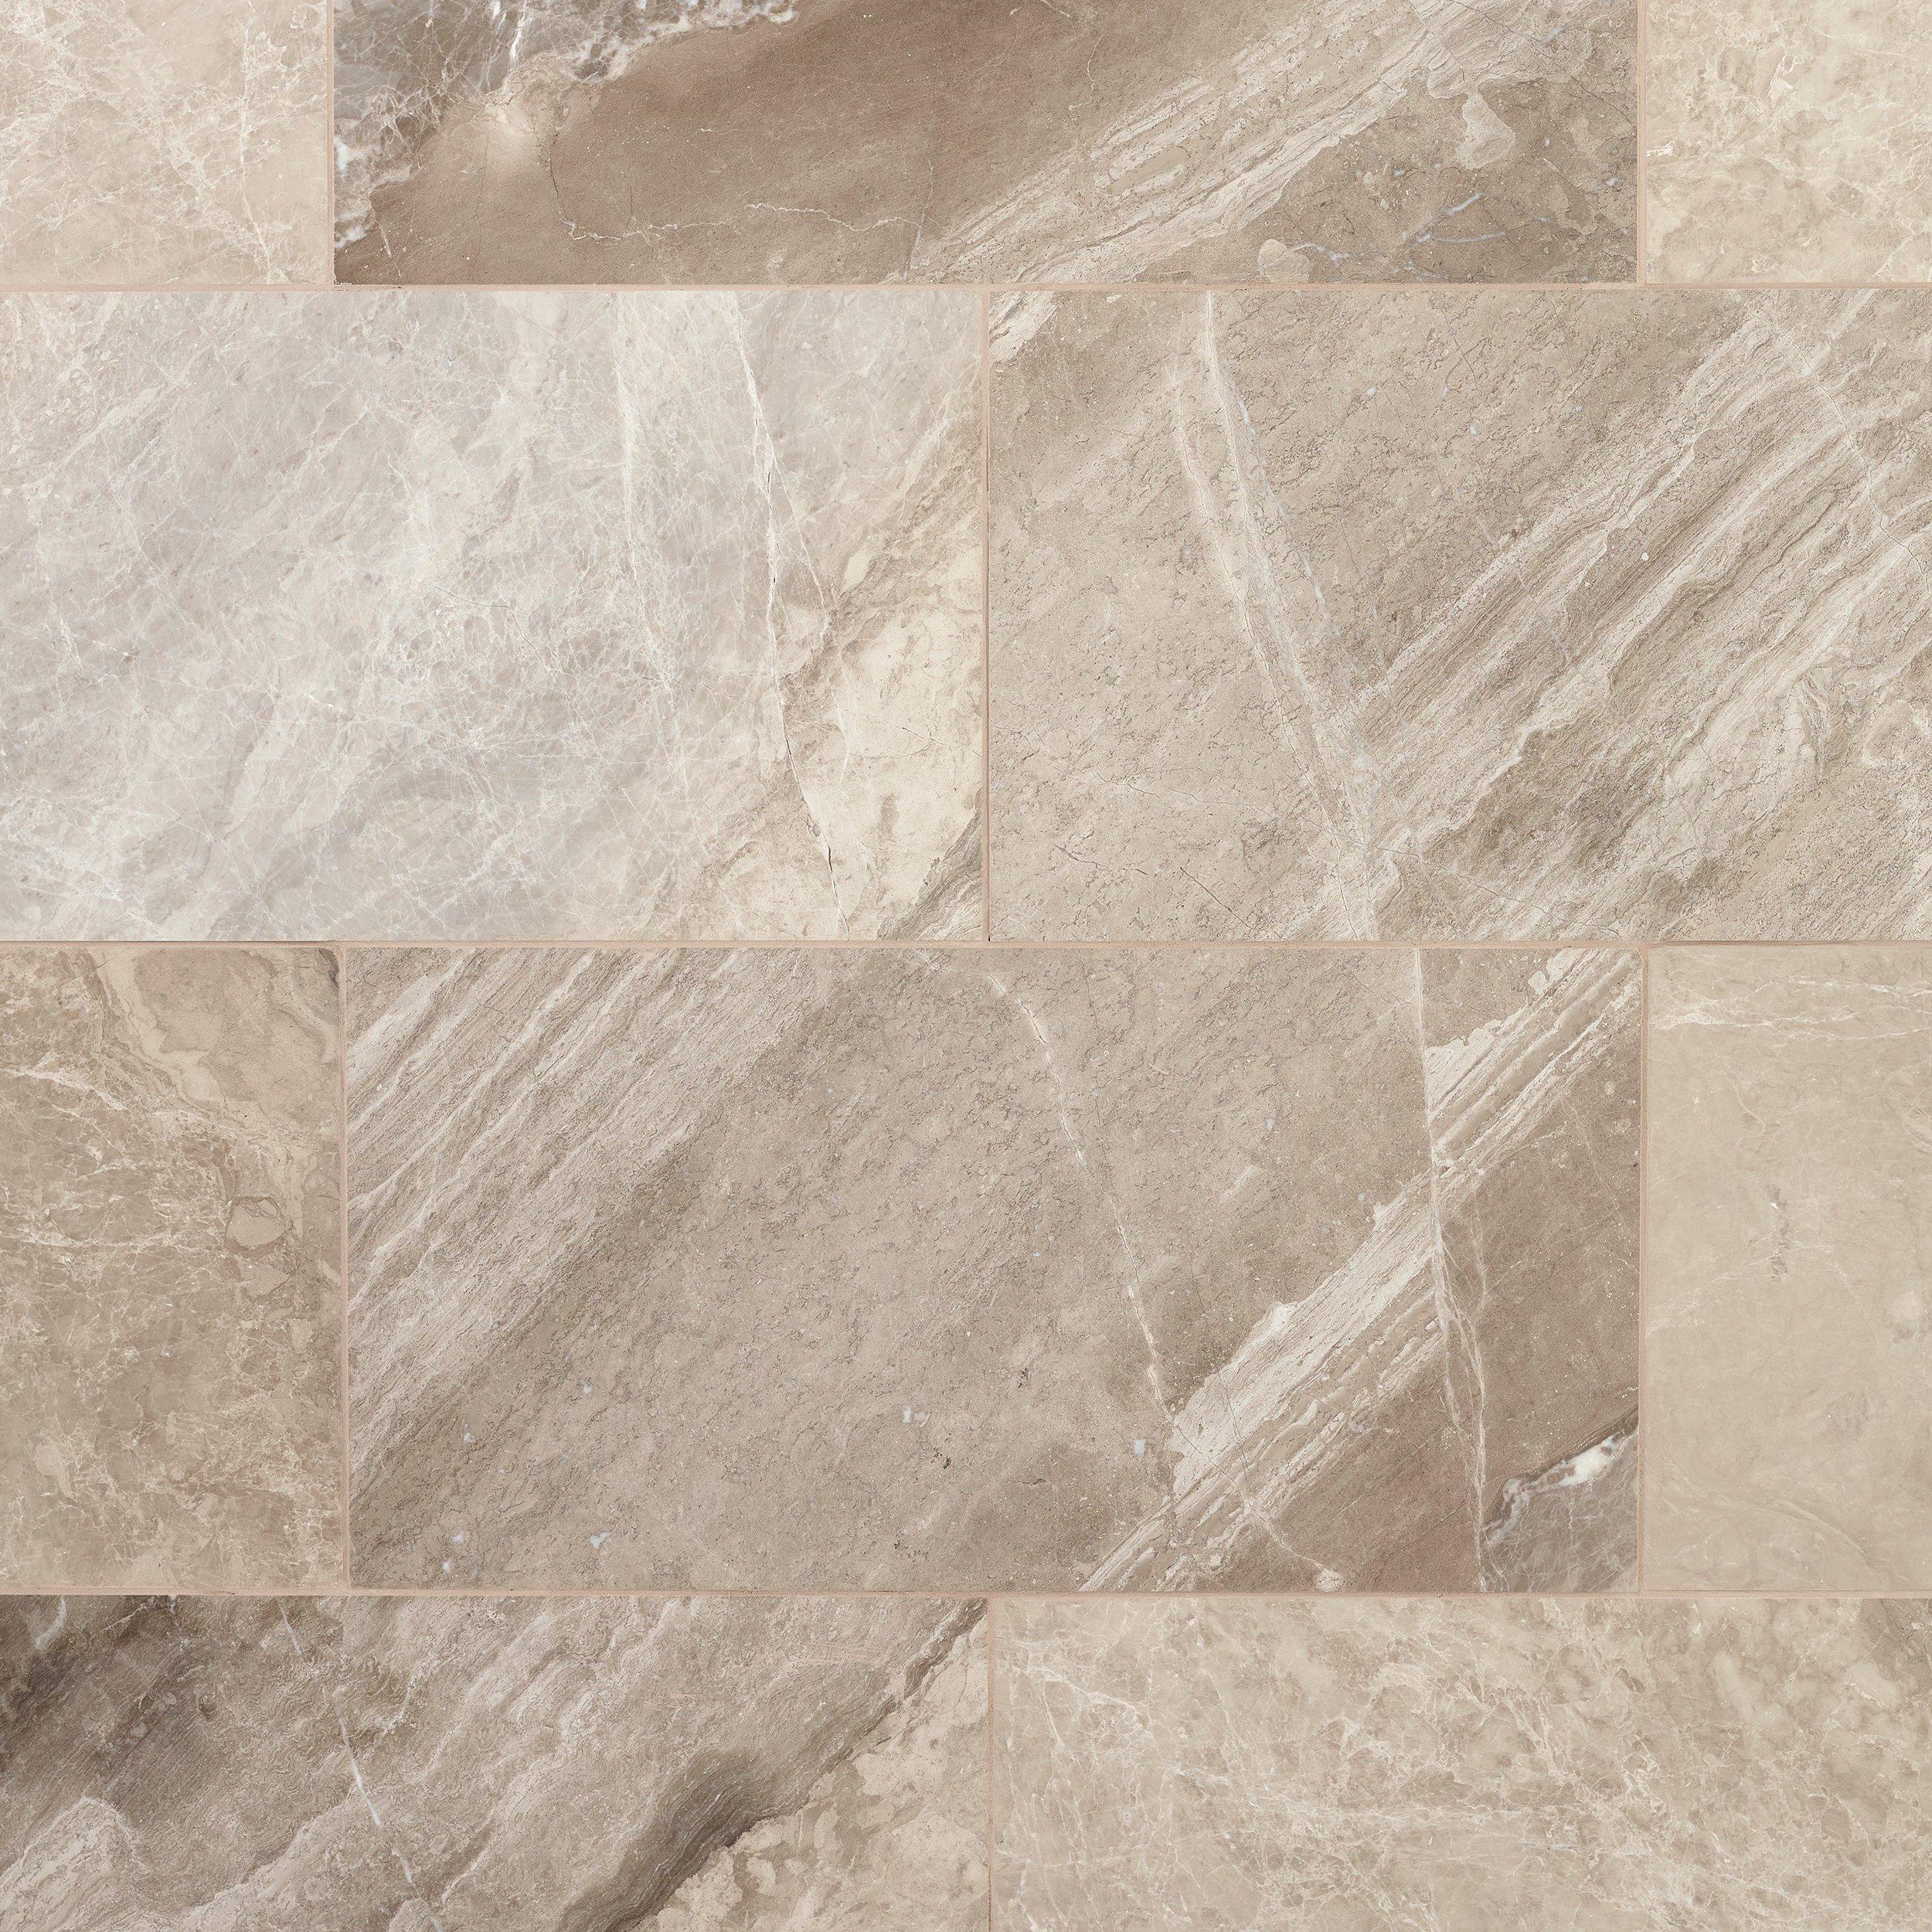 Sumatra Grey Polished Marble Tile